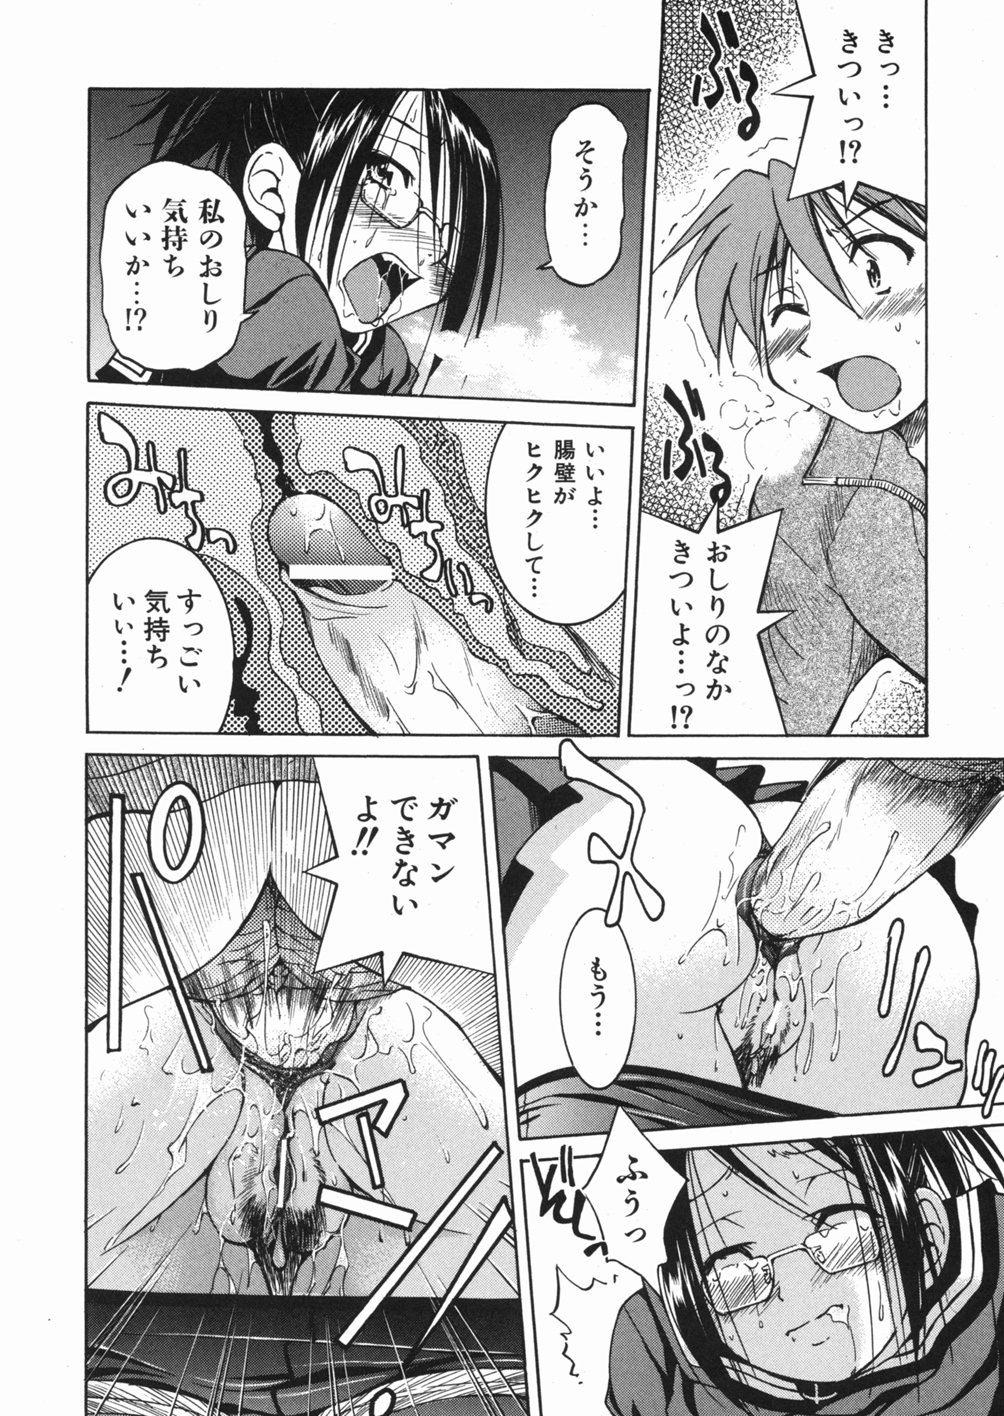 [Inoue Yoshihisa] Sunao page 28 full